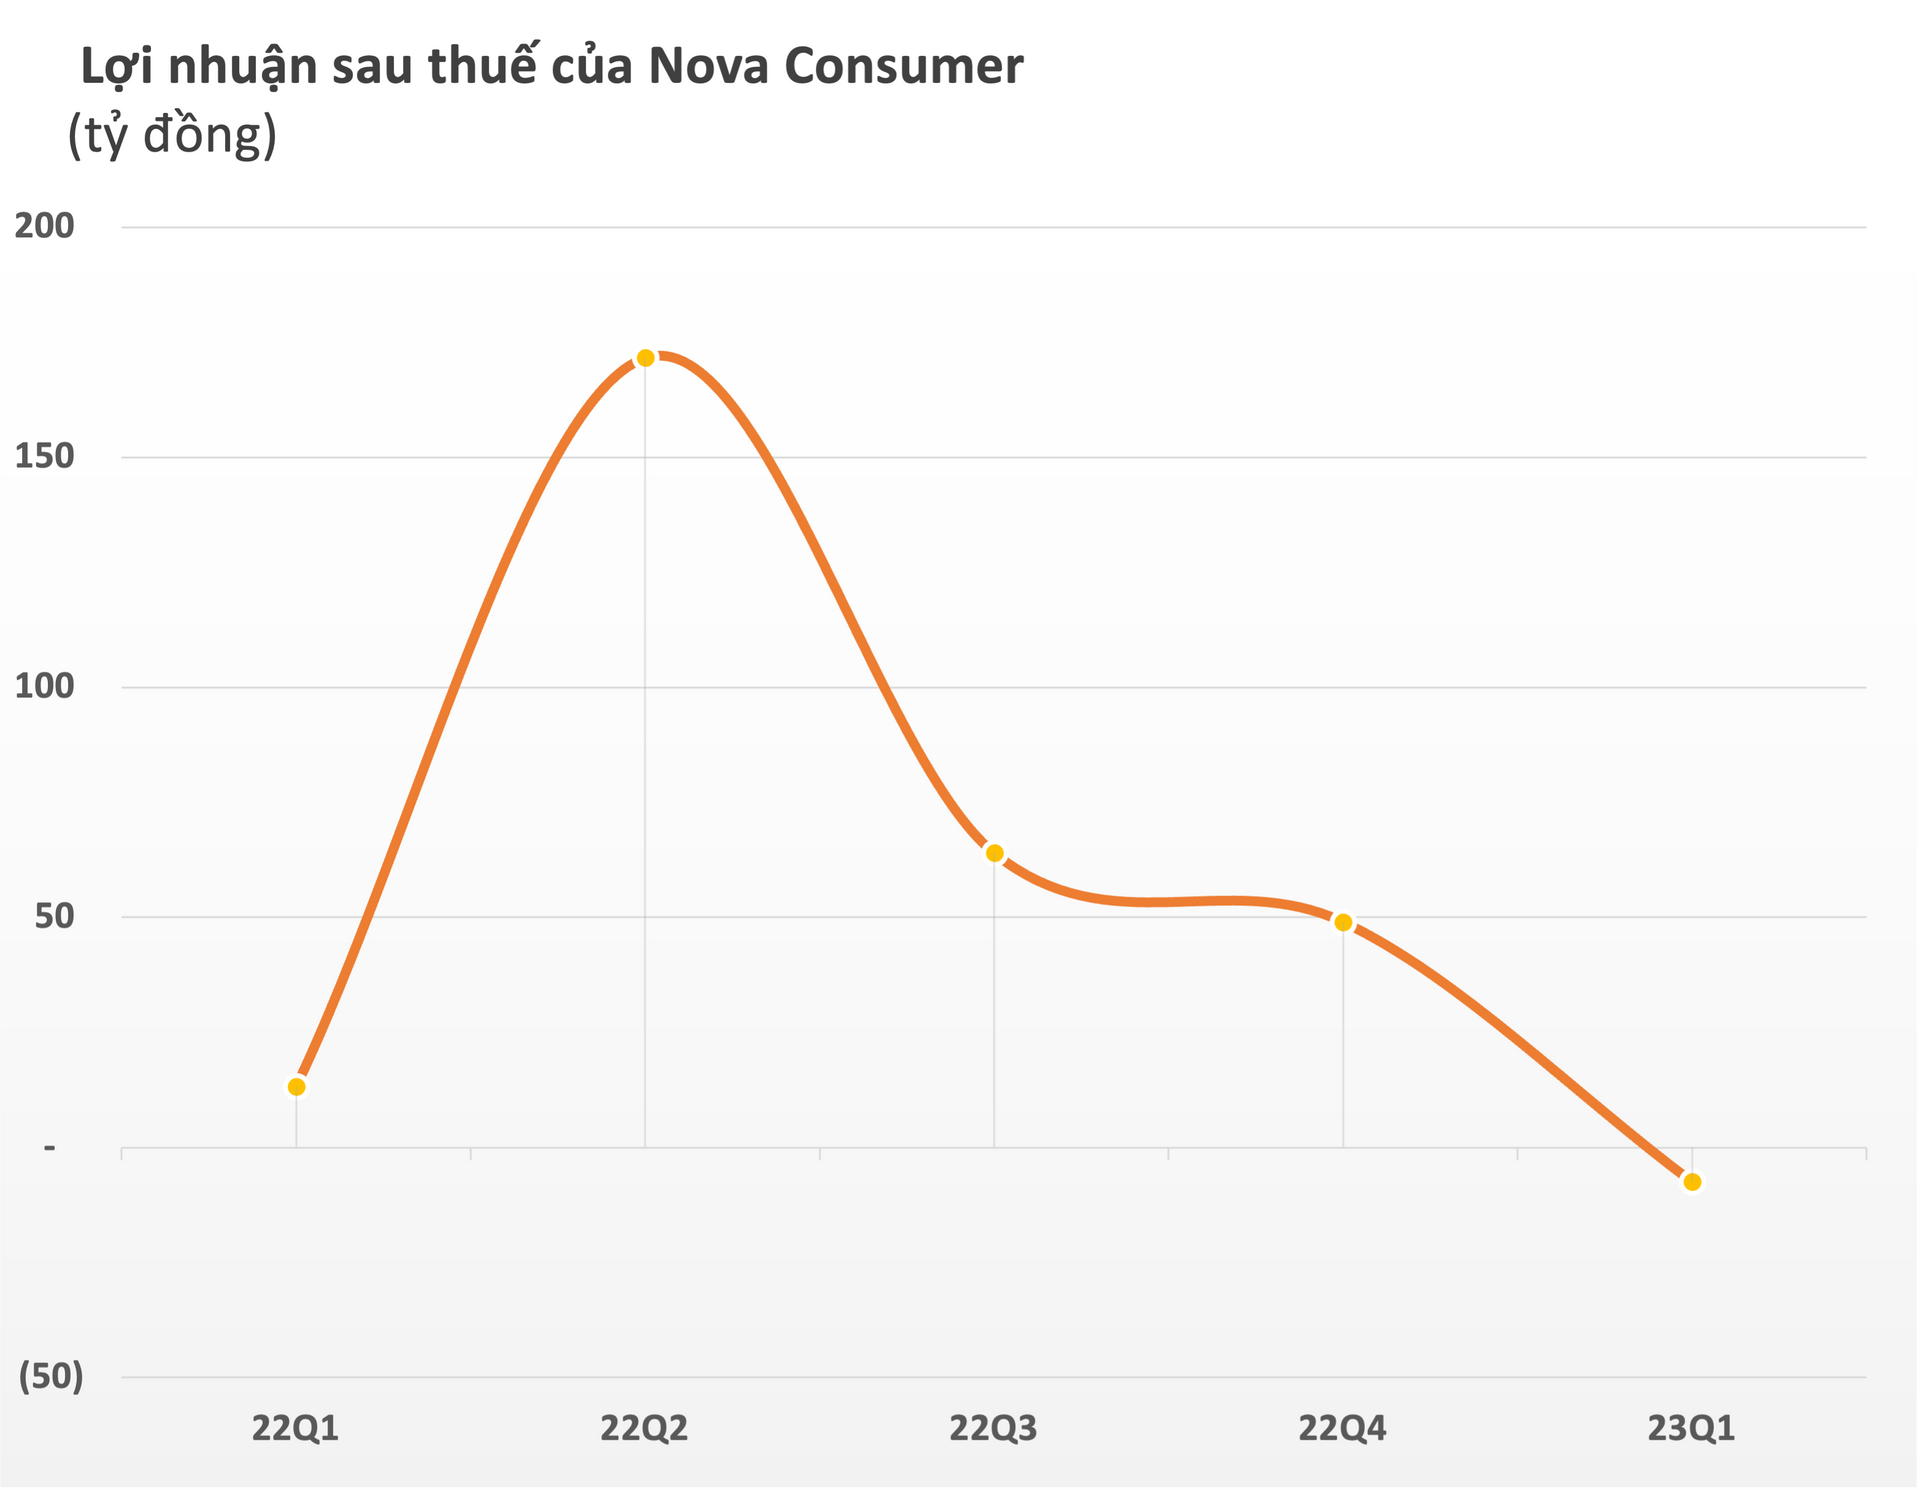 Nova Consumer (NCG) lần đầu tiên báo lỗ kể từ khi IPO - Ảnh 2.